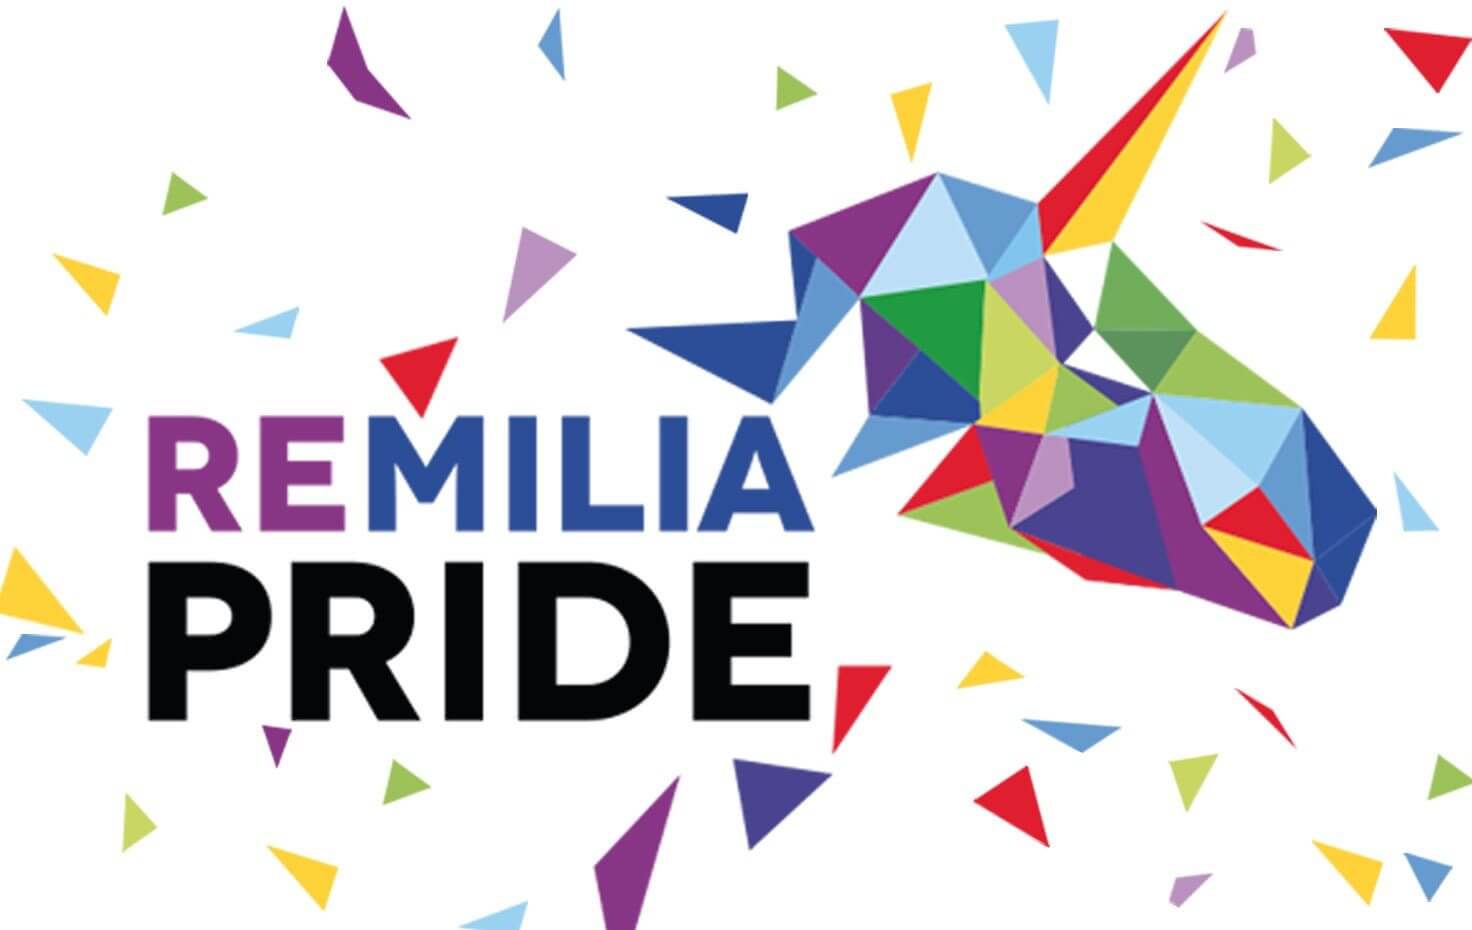 Il primo Pride dell'Emilia ha bisogno di voi: aperto il crowdfunding per sostenere l'evento - remilia pride - Gay.it